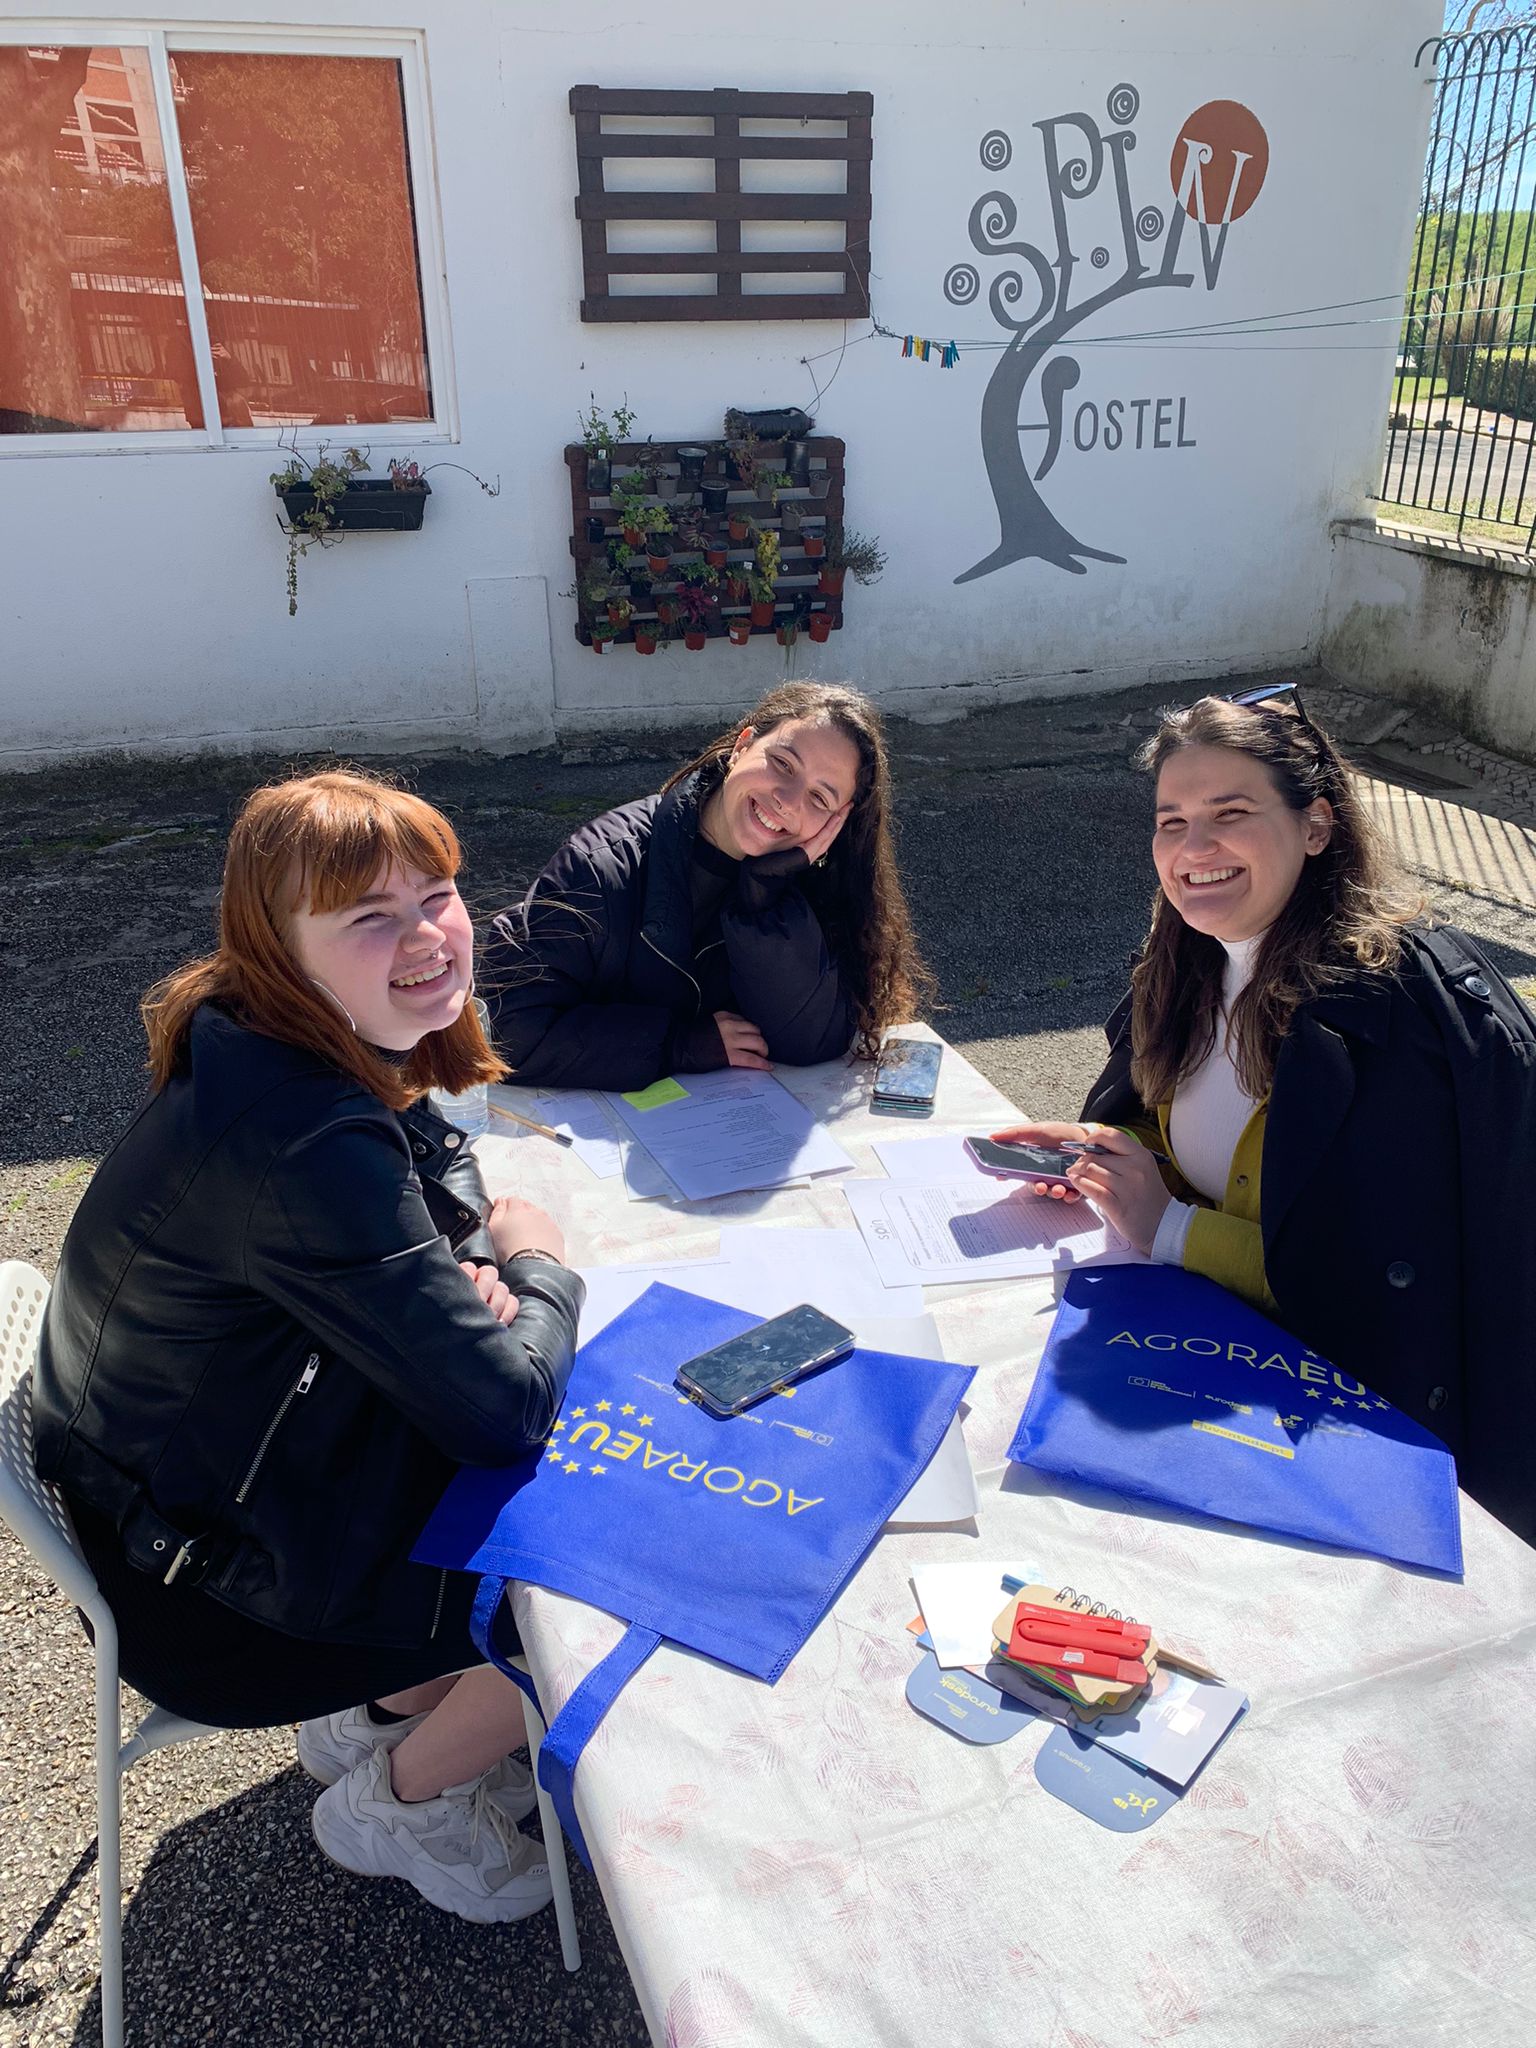 Vabatahtlikku ootab organisatsioon SPIN Association.
The post “Vabatahtlik teenistus Portugalis – SPIN” appeared first on Continuous Action.